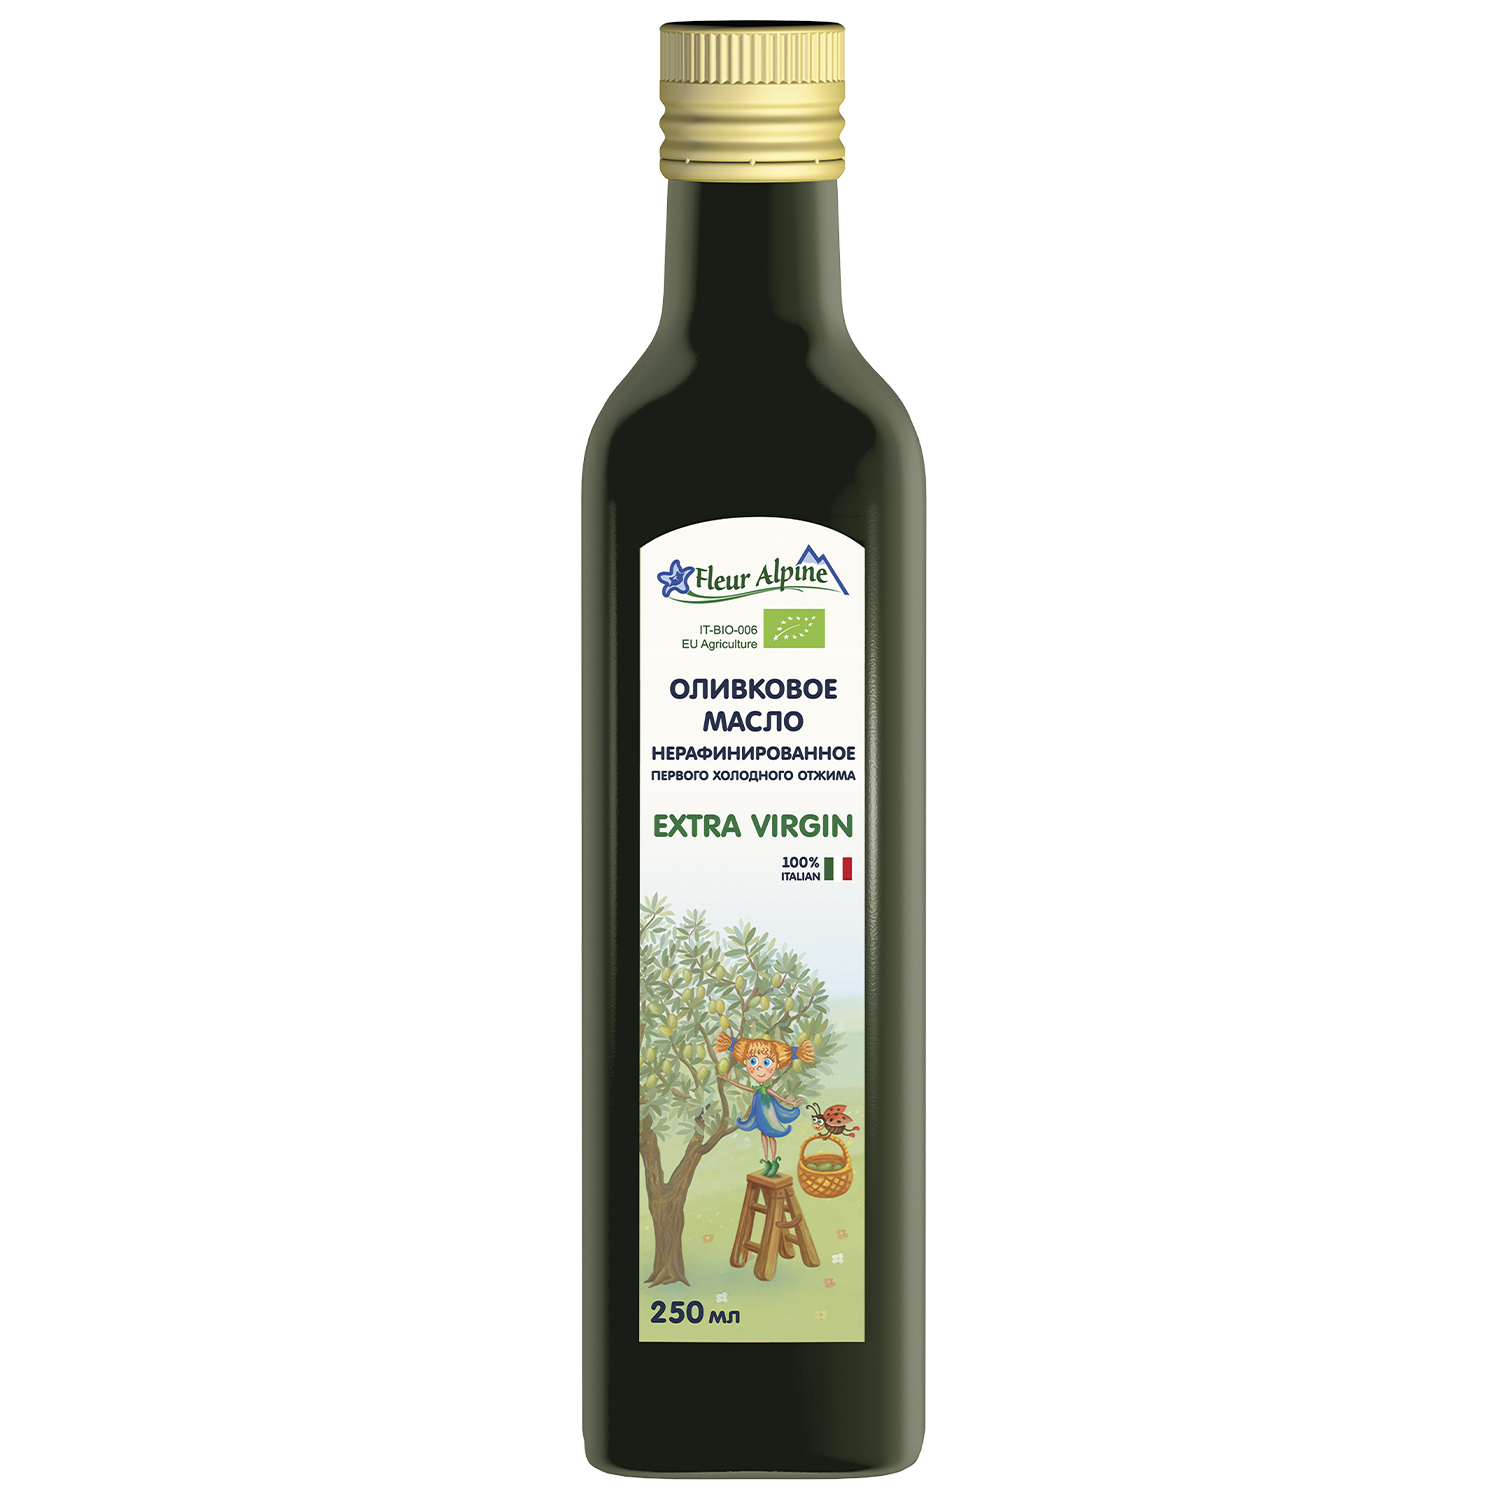 Оливковое масло детское Fleur Alpine Extra Virgin, с 6 месяцев, 250 мл каша детская fleur alpine овсяная с грушей молочная с 5 месяцев 200 гр